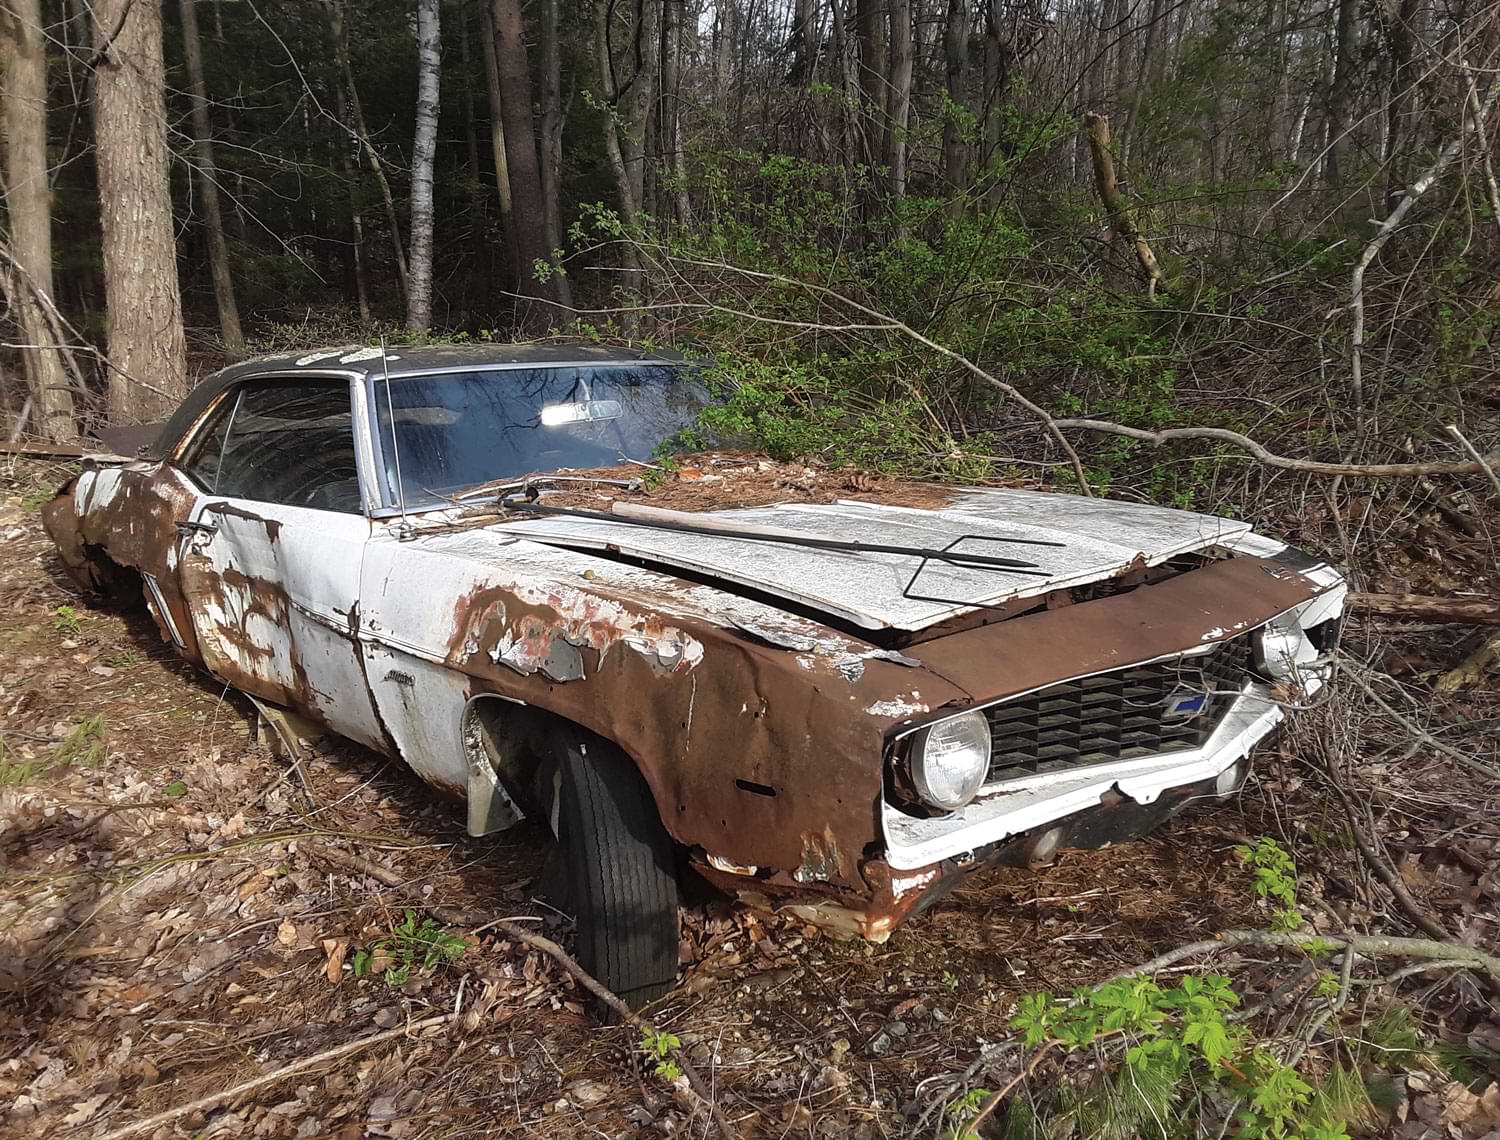 1969 Camaro discovered in Massachusetts